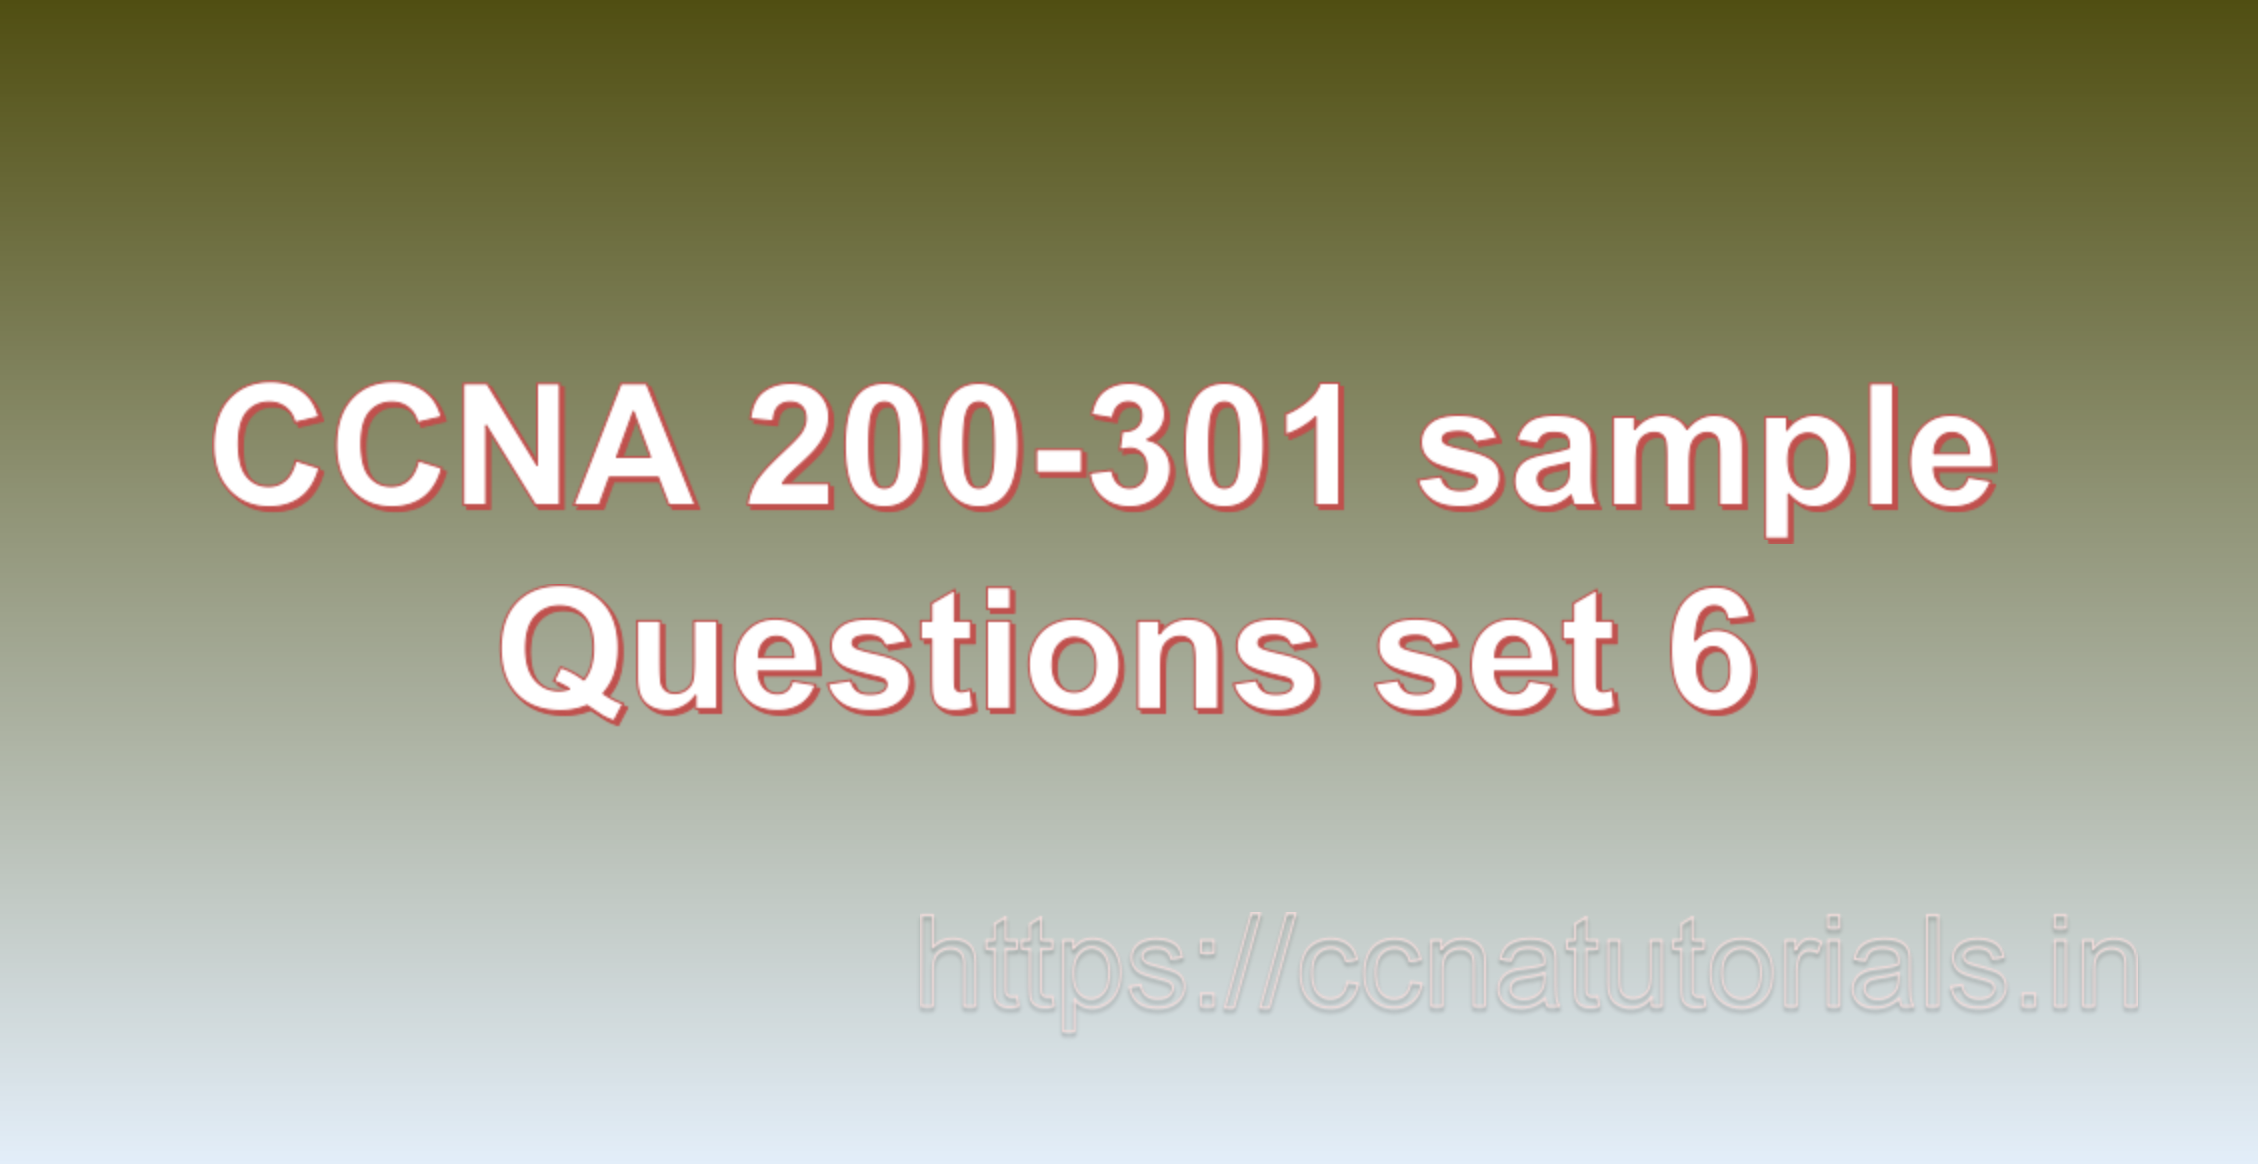 ccna sample questions set 6, ccna tutorials, CCNA Exam, ccna